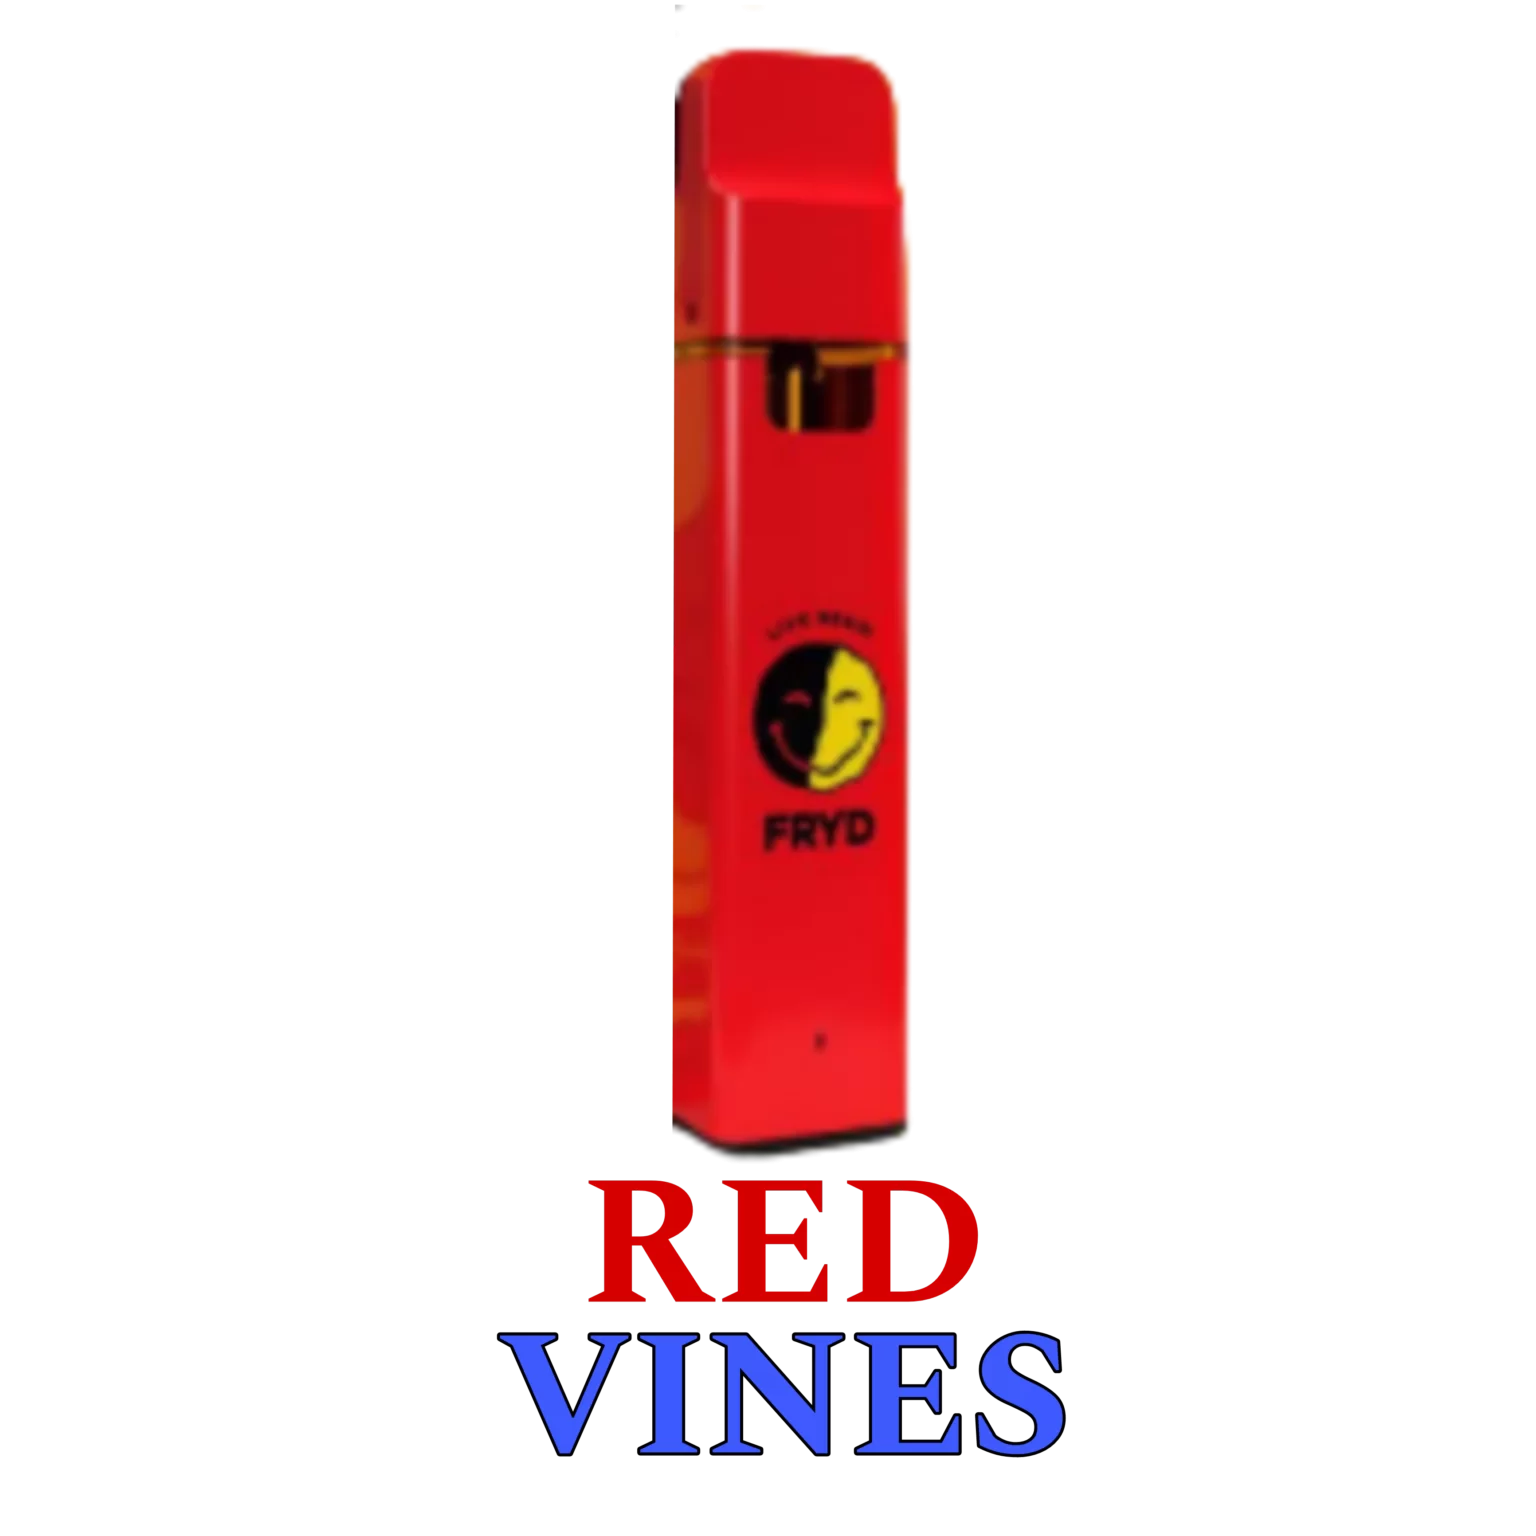 RED VINES FRYD FLAVOR